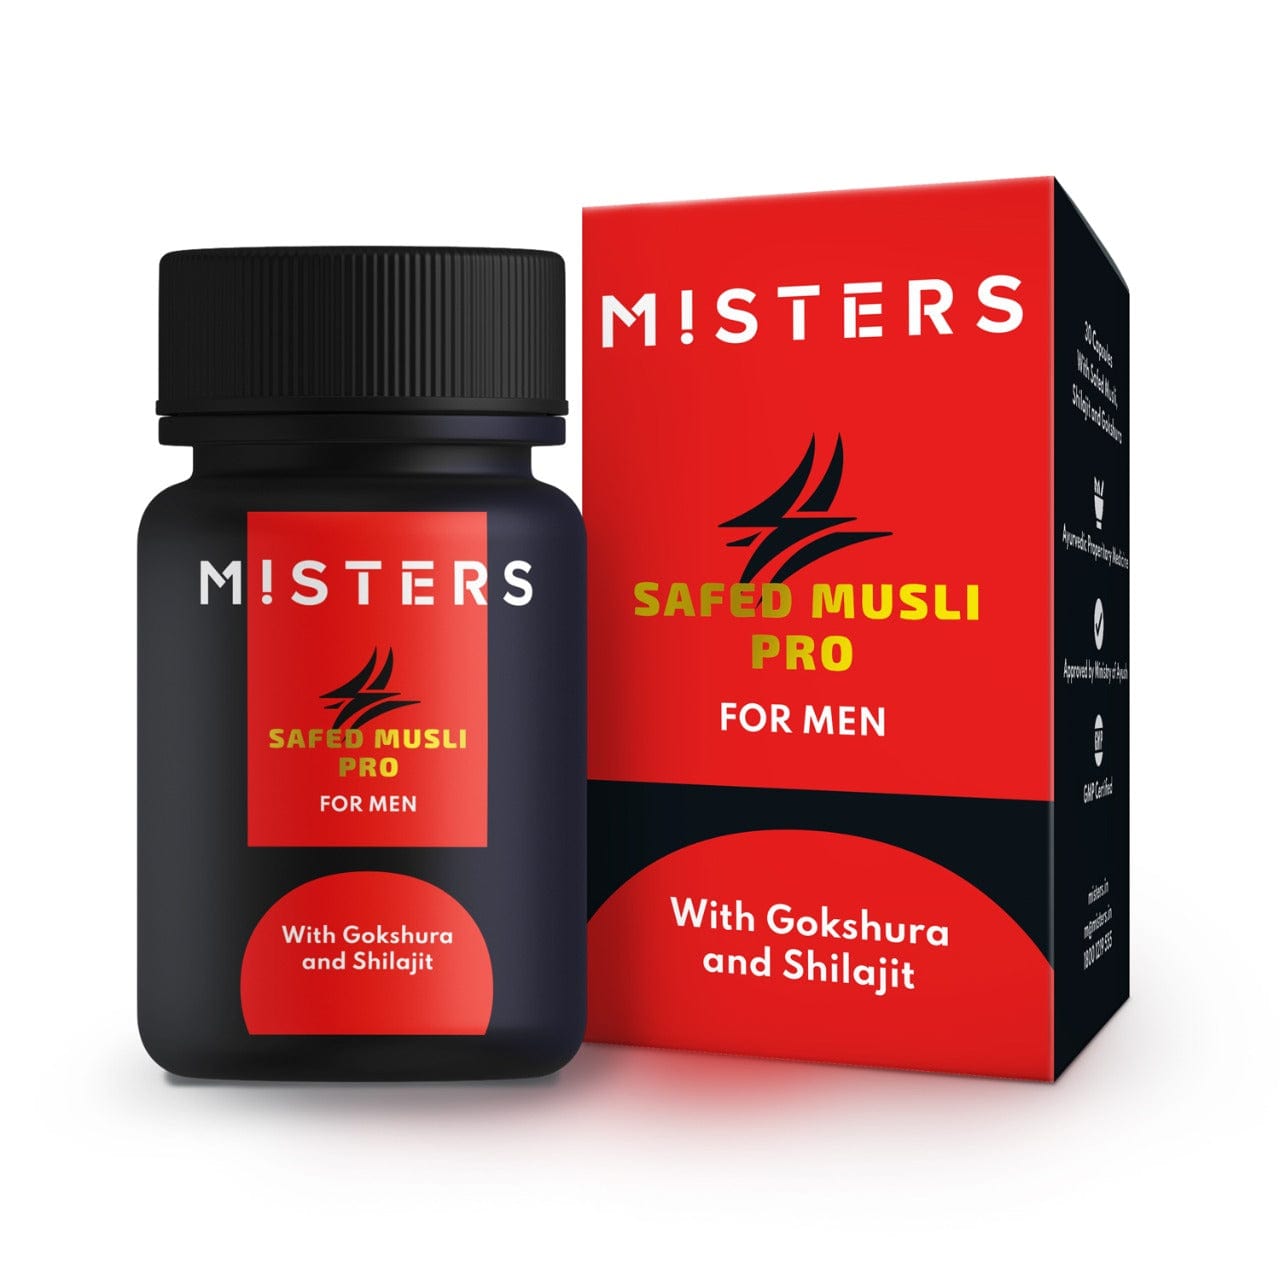 Misters Misters Safed Musli Pro for Men